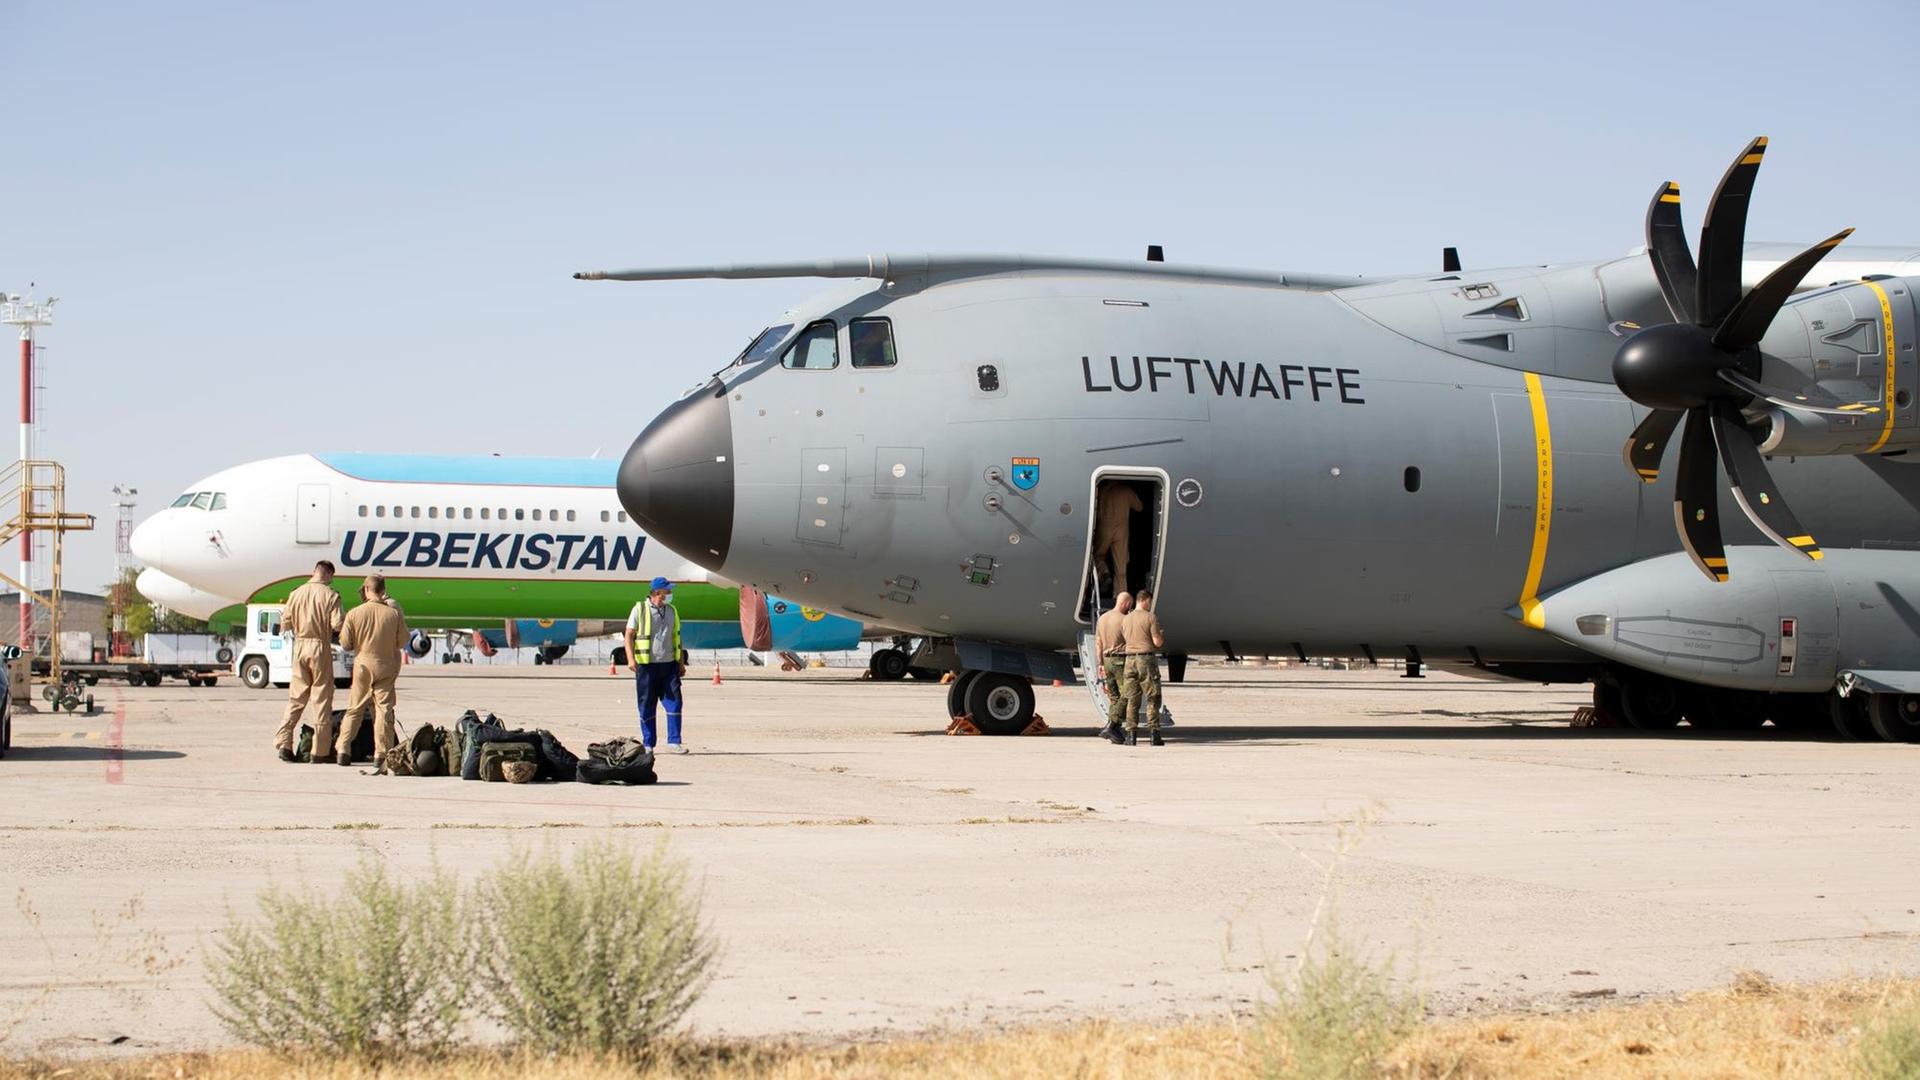 Ein Flugzeug der Luftwaffe auf dem Flughafen von Taschkent / Usbekistan. Die Bundeswehr hat eine Luftbrücke eingerichtet, um Afghanen ins Nachbarland auszufliegen.